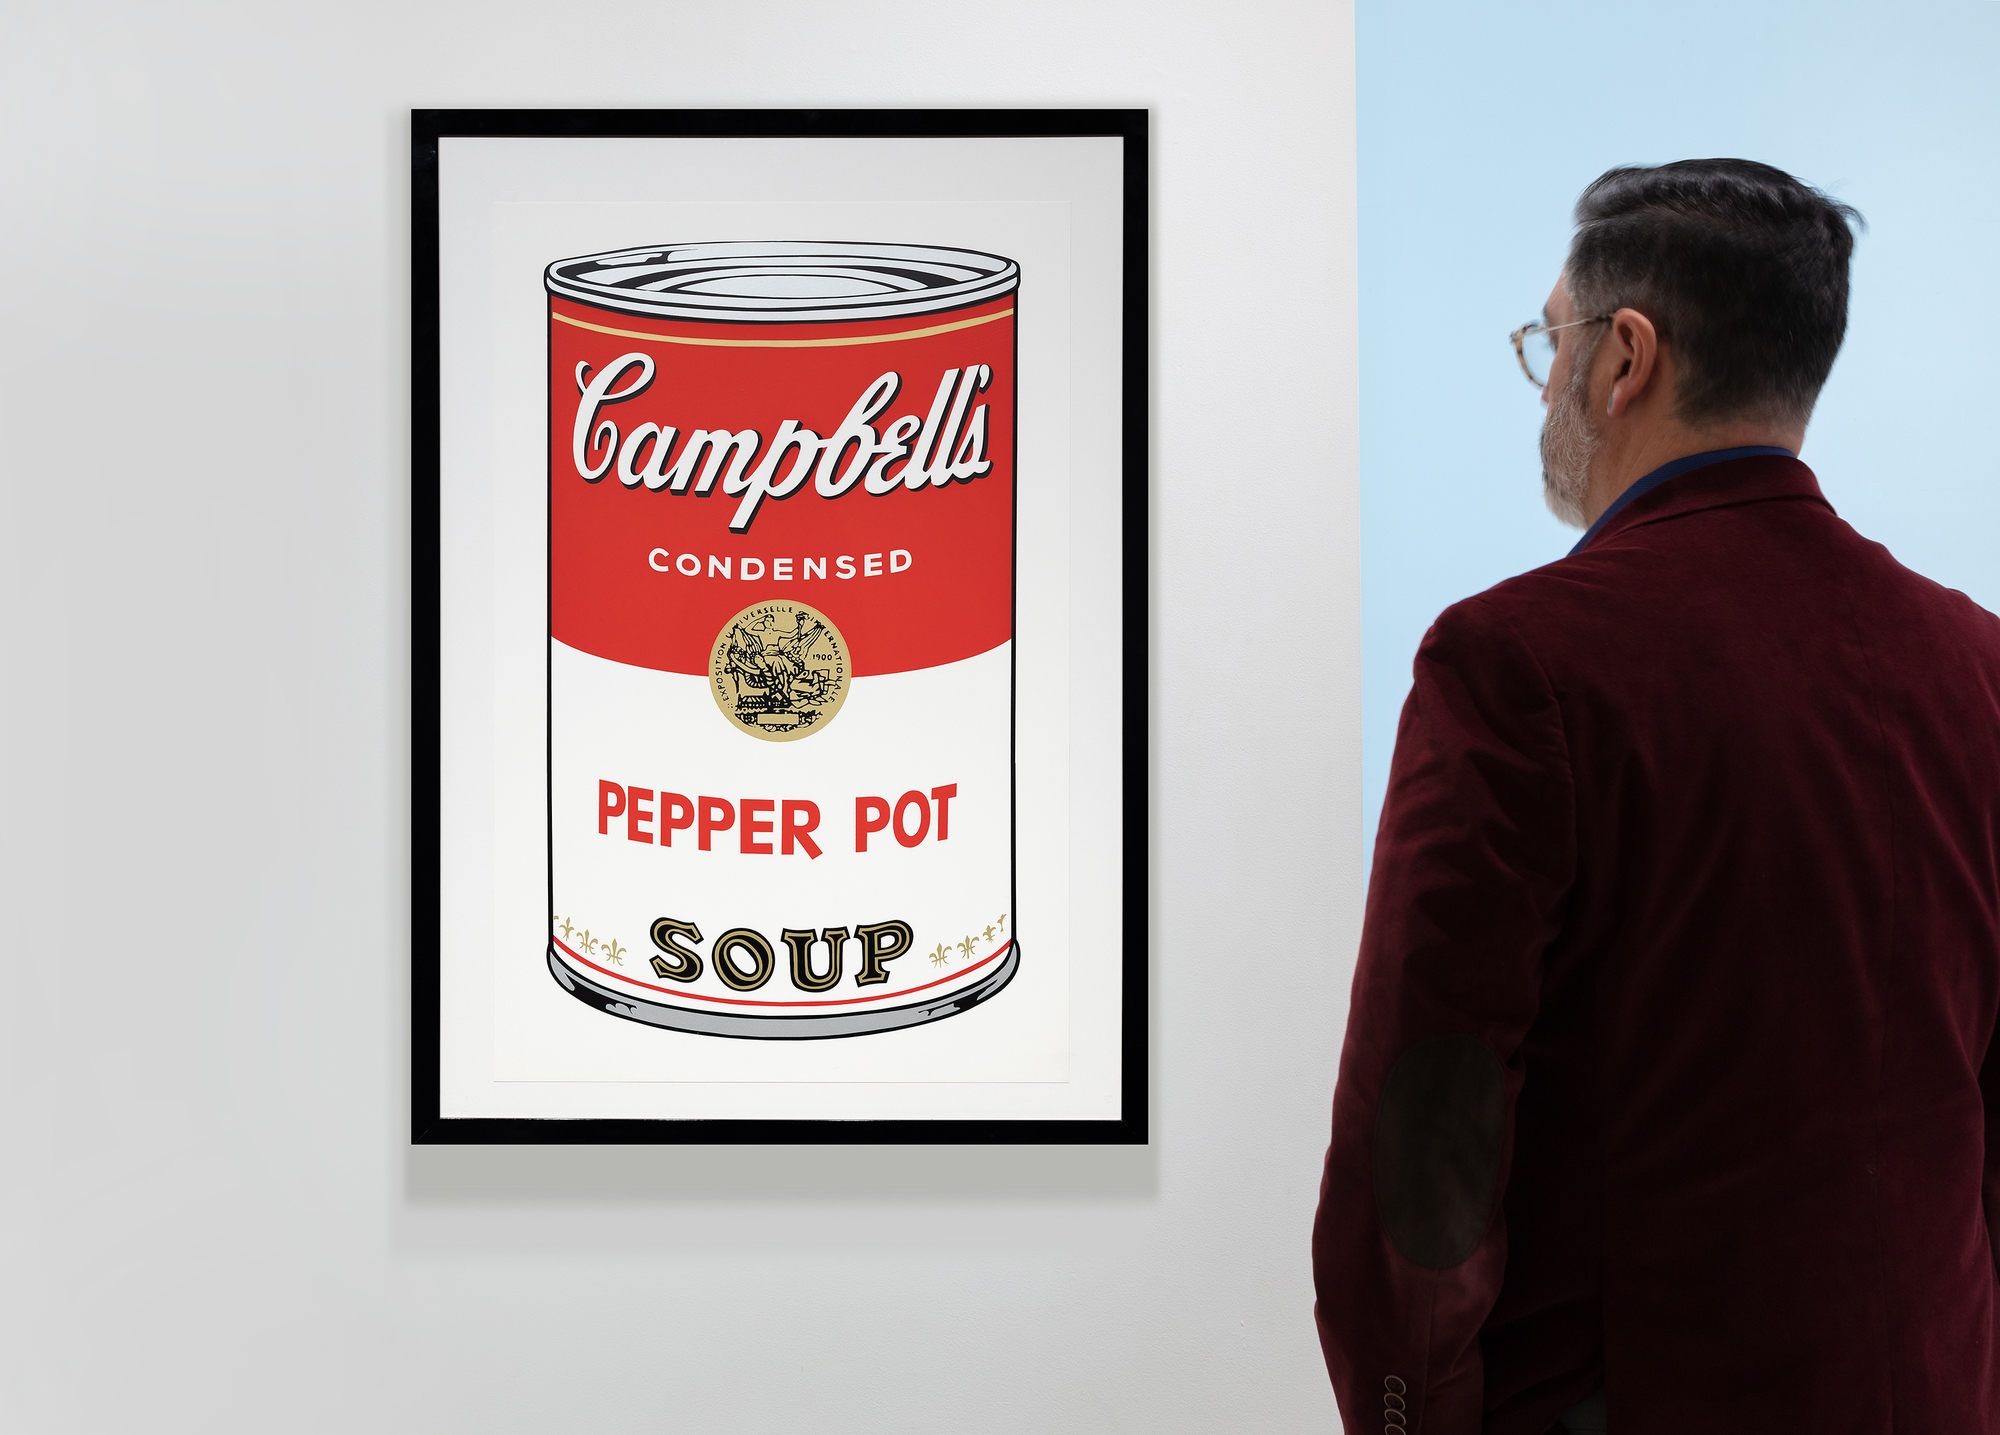 Andy Warhols Campbell&#039;s Soup Cans Serie markiert einen entscheidenden Moment in seiner Karriere und der Pop Art Bewegung. Die Serie, bestehend aus 32 Leinwänden, die jeweils eine andere Geschmacksrichtung zeigen, revolutionierte die Kunstwelt, indem sie alltägliche Konsumgüter in den Status der hohen Kunst erhob. Der Siebdruck Pepper Pot aus dem Jahr 1968 zeigt den für ihn typischen Stil mit leuchtenden, flachen Farben und sich wiederholenden Bildern, die für die Massenproduktion und die Konsumkultur charakteristisch sind. Der Siebdruck, eine kommerzielle Technik, passt zu Warhols Interesse, die Grenzen zwischen hoher Kunst und kommerzieller Kunst zu verwischen und künstlerische Werte und Wahrnehmungen in Frage zu stellen.